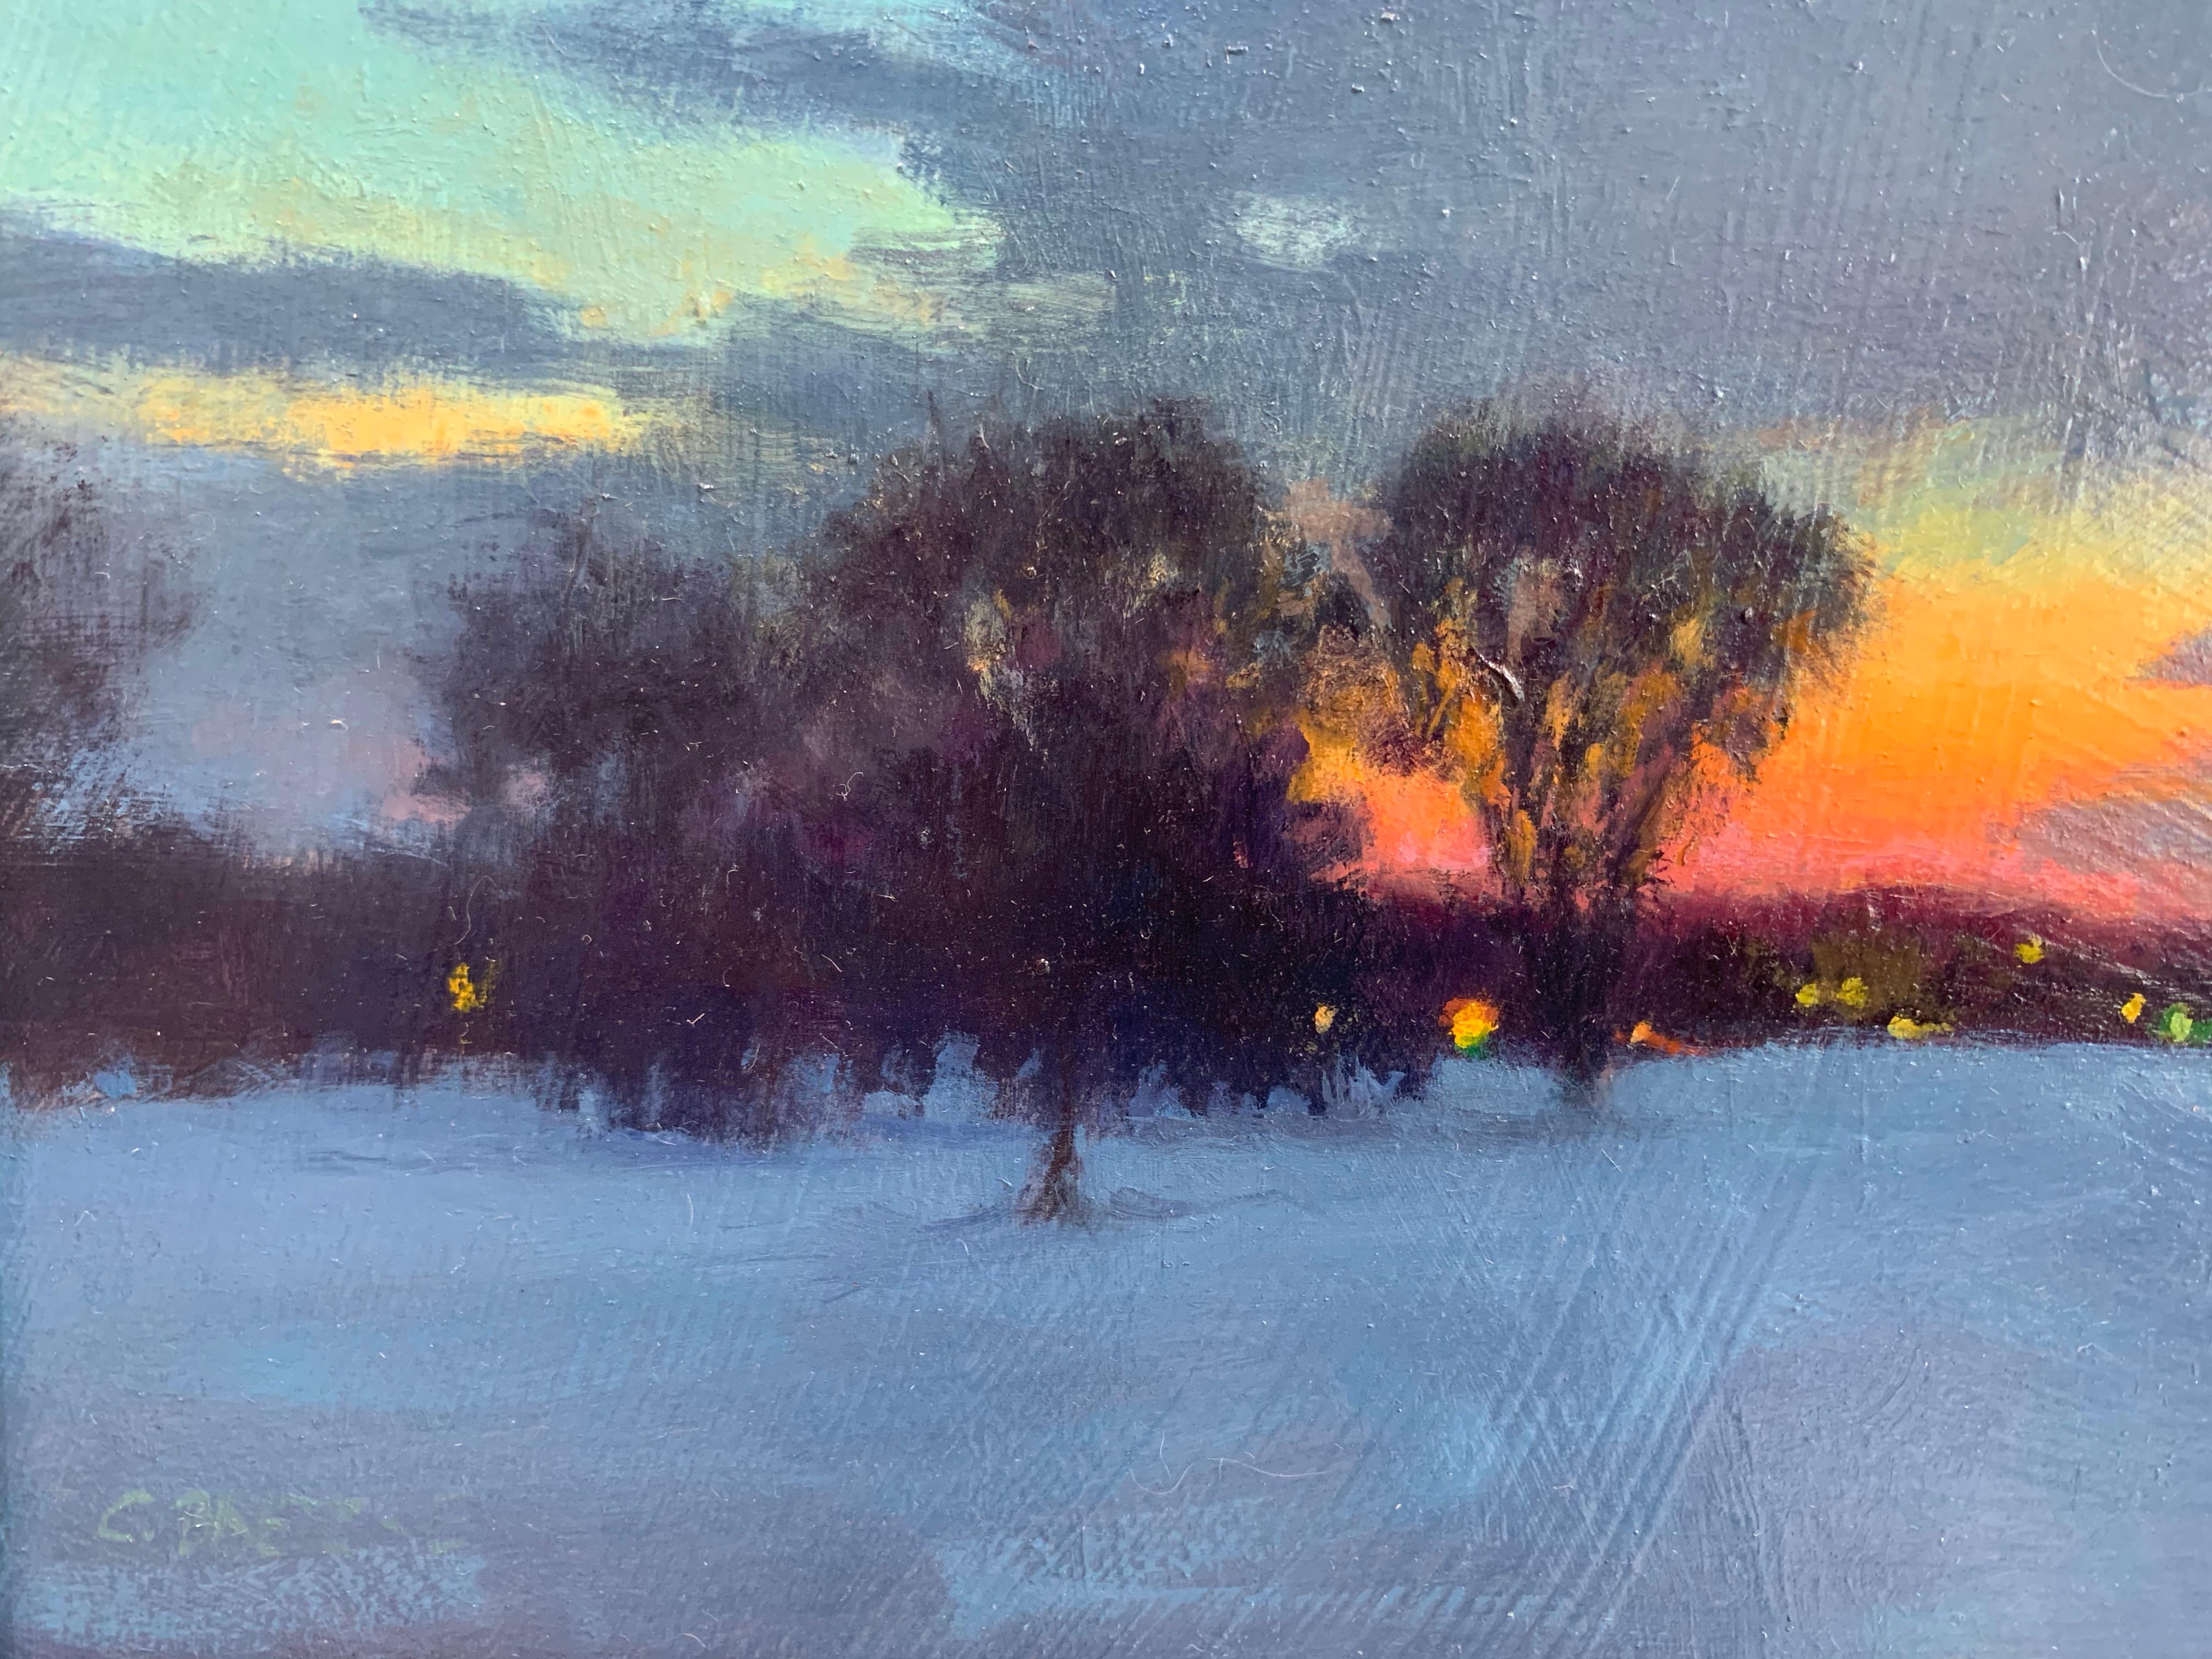 Winter Field, Late Dusk - Blue Landscape Painting by Carl Bretzke